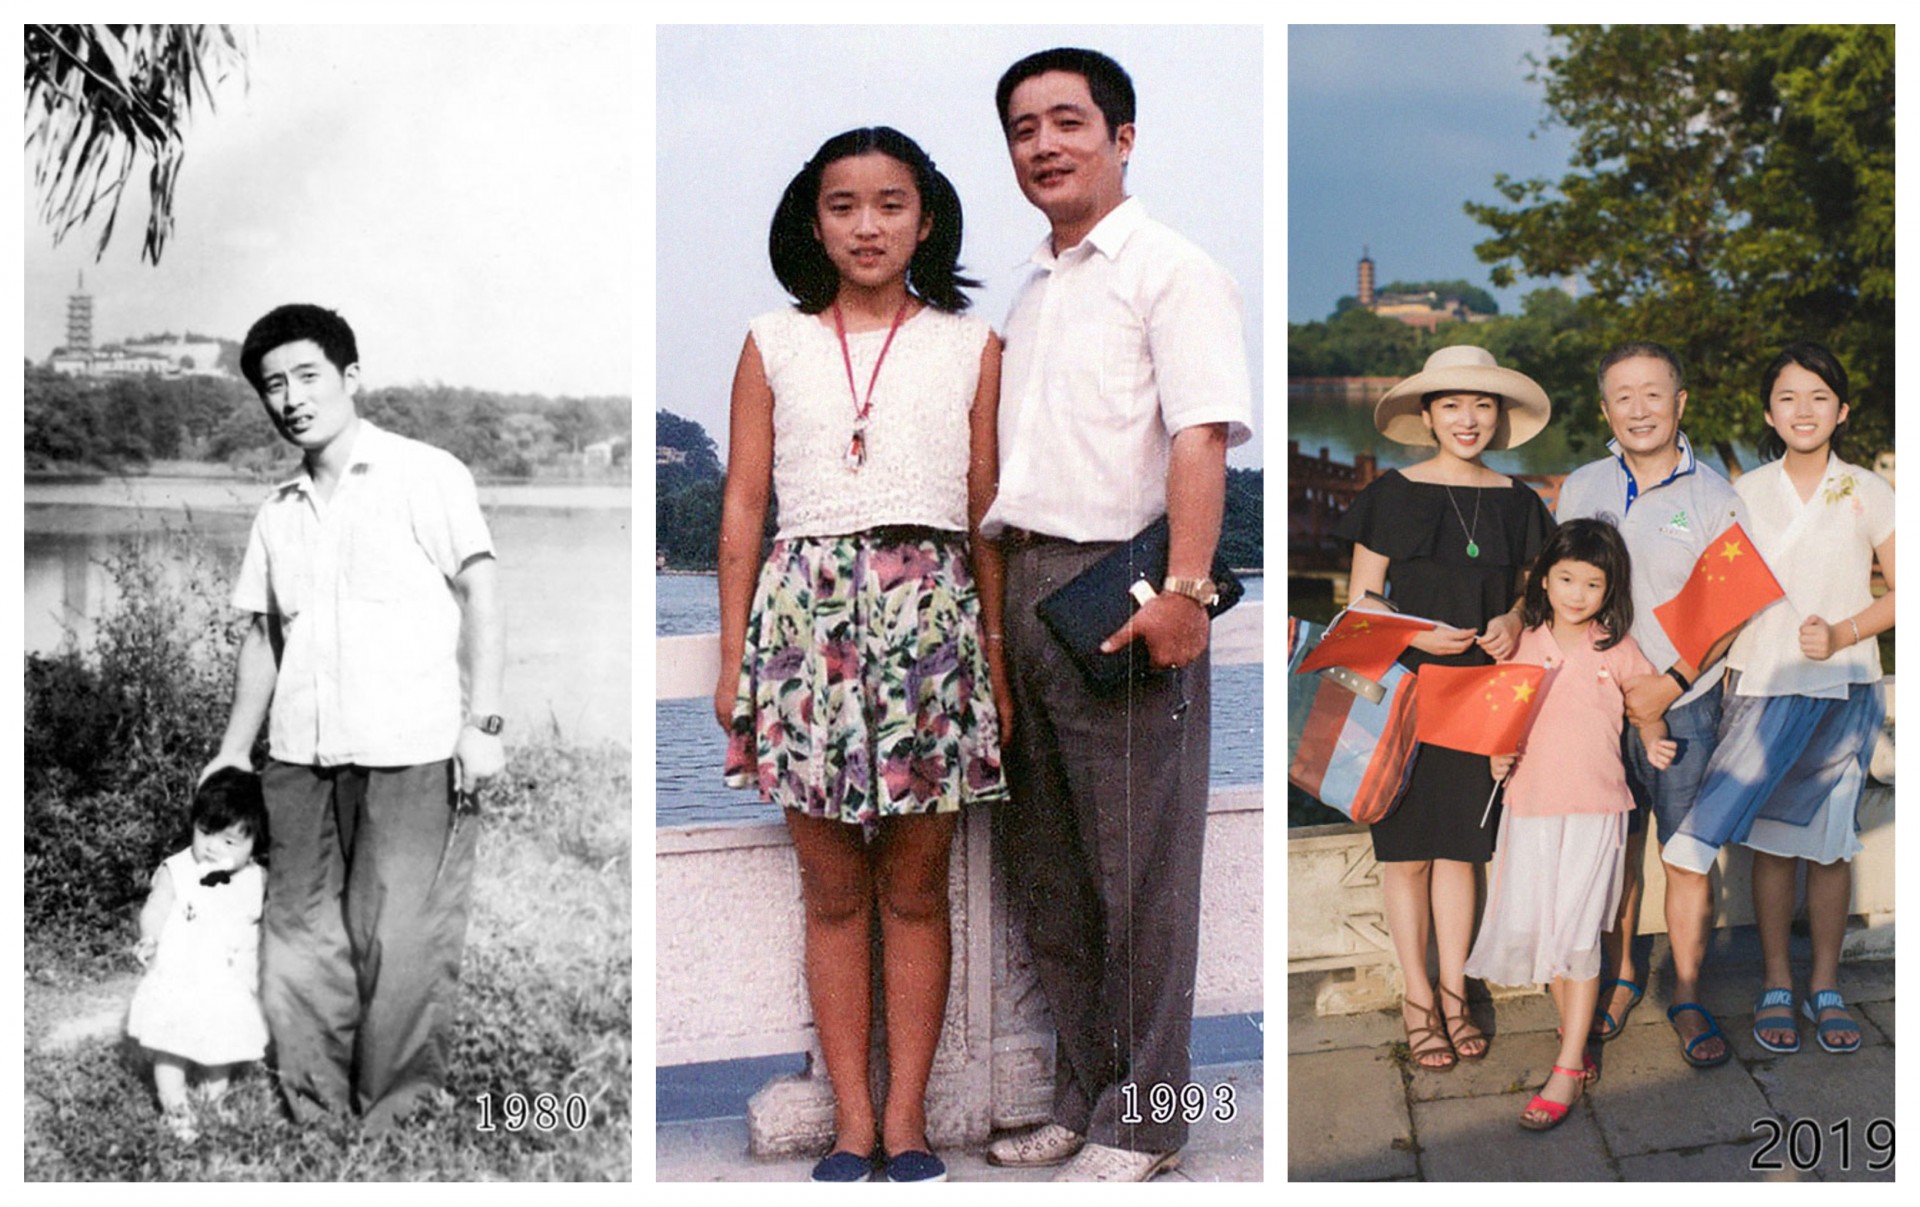 40 години се фотографираат на исто место: Ќе се наежите од разликата